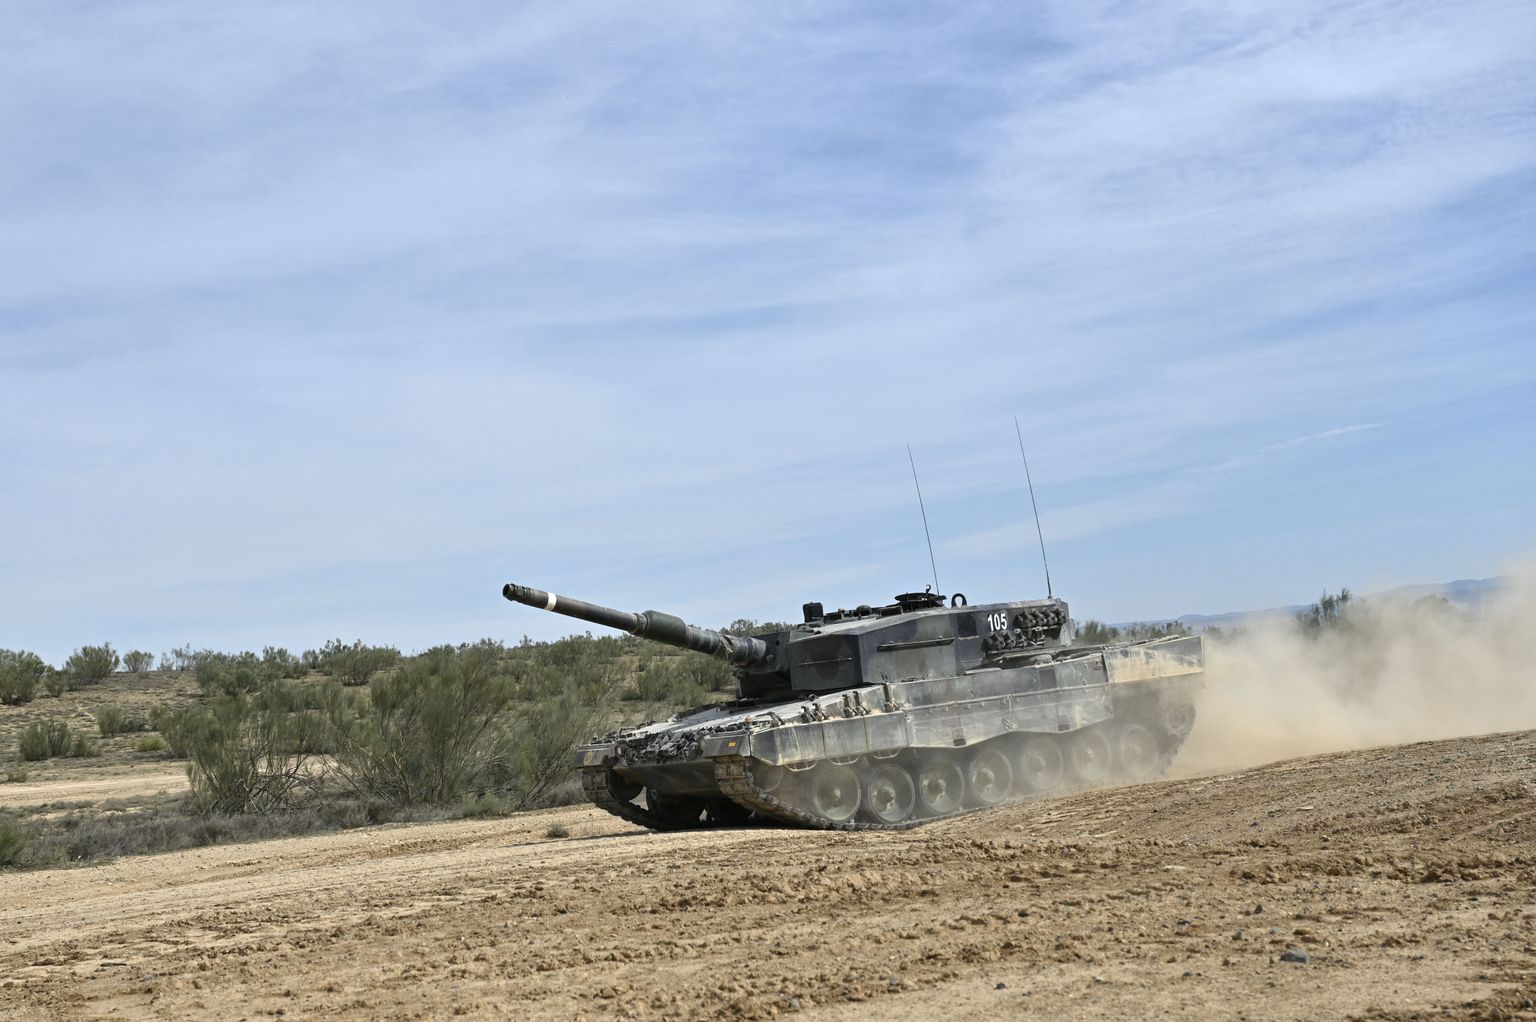 Pildil on Ukraina sõjaväelased Hispaanias Leopardi tankiga manöövreid treenimas. Venemaa väidab, et on kaheksa sellist tanki juba õhku lasknud. Seda tõestav video tekitab aga kahtlusi